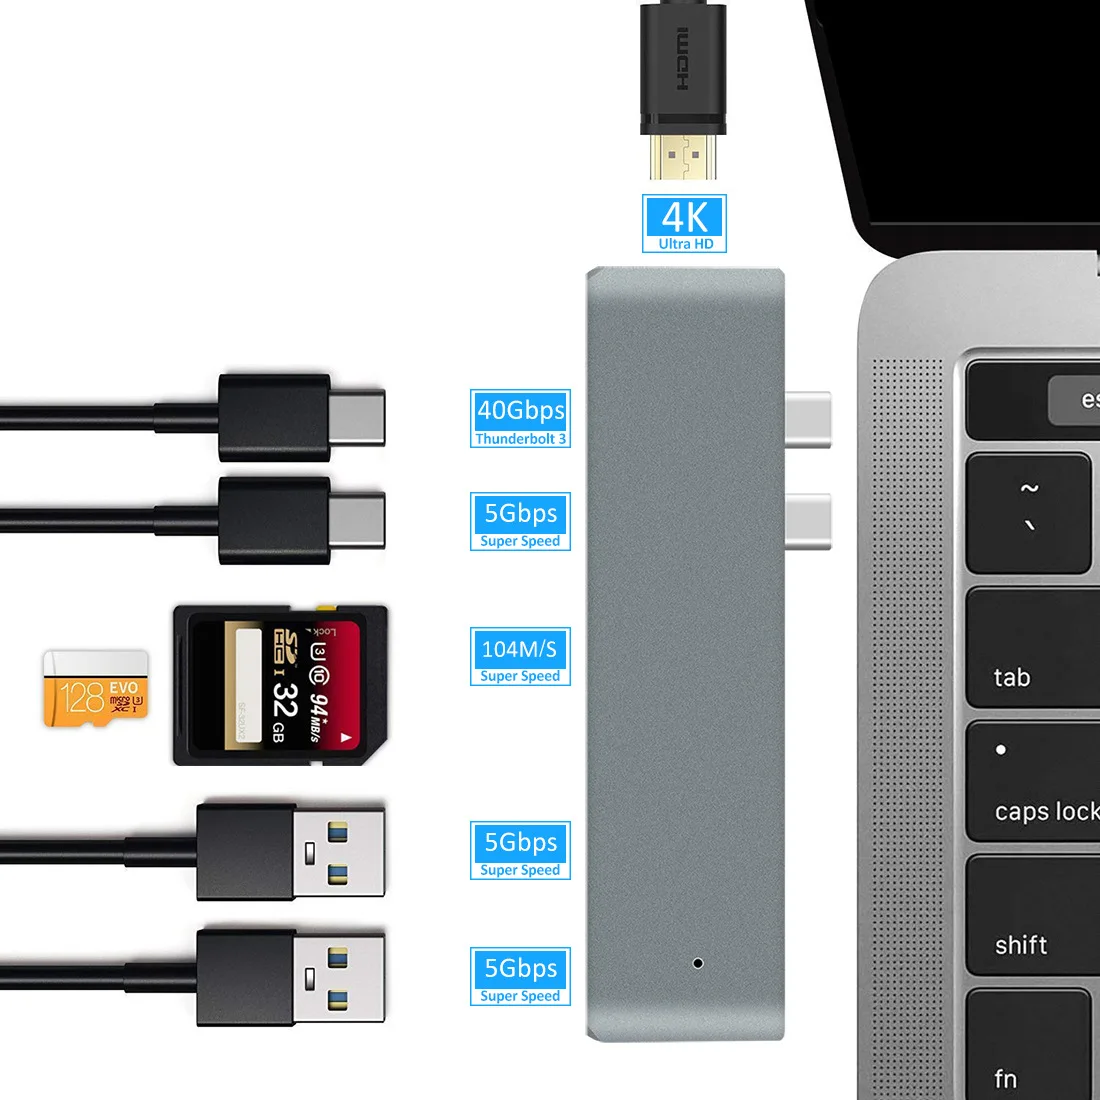 Двойной тип-c USB c MacBook pro к HDMI TF SD концентратор-картридер док-станция 4K